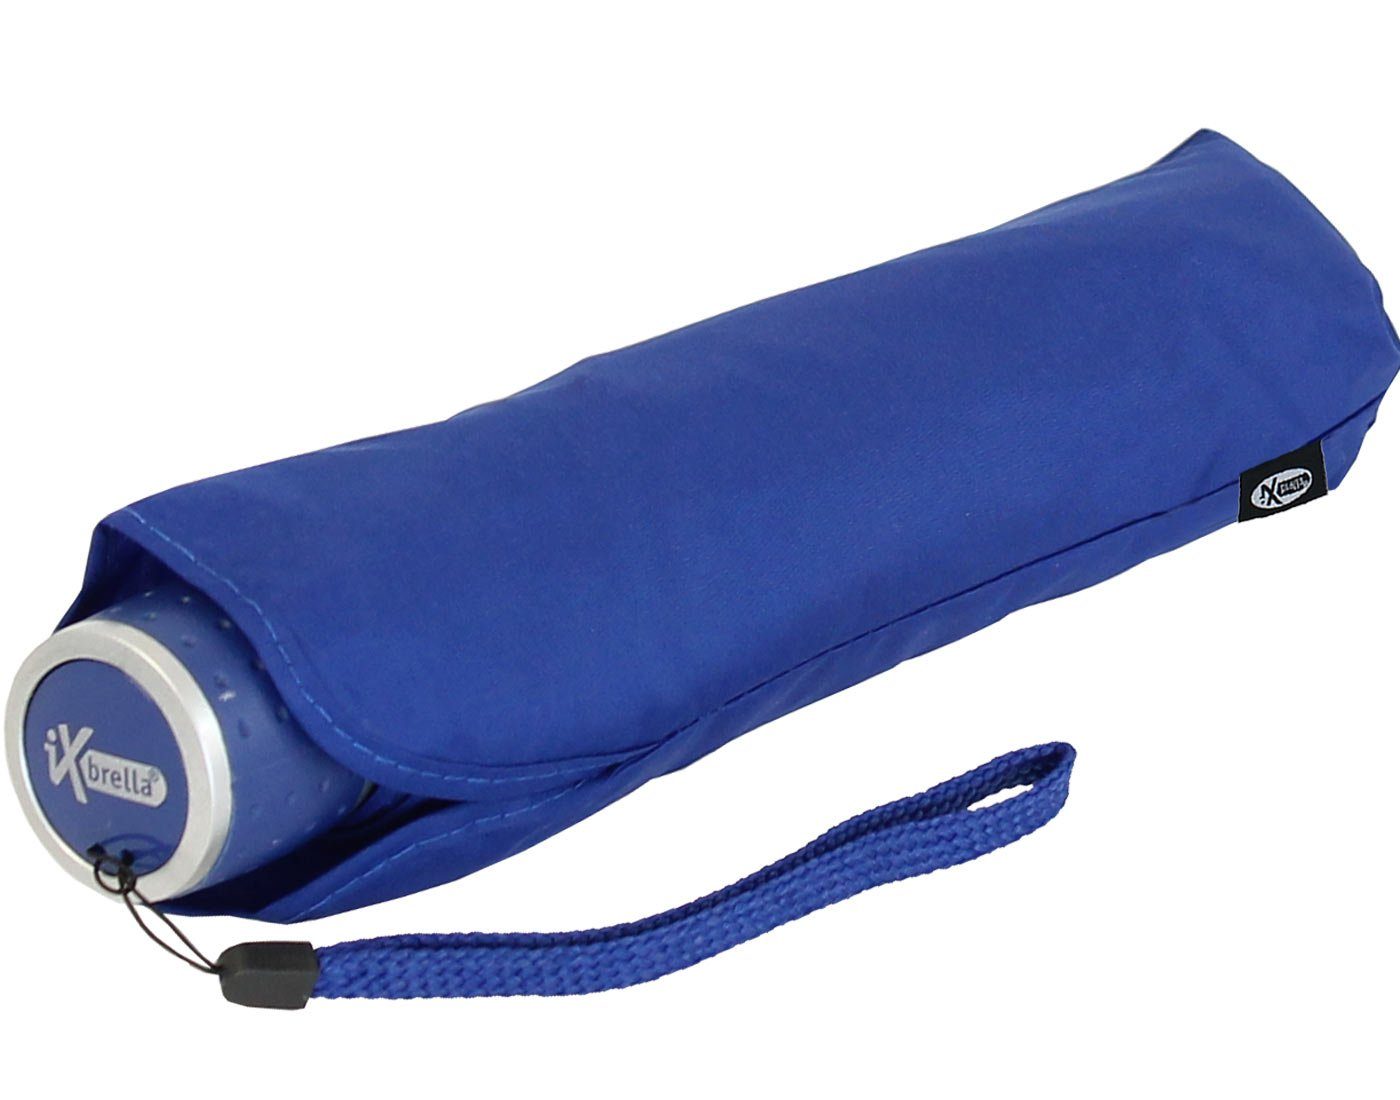 - Taschenregenschirm Ultra Light blau leicht, extra iX-brella - Dach Mini farbenfroh großem mit